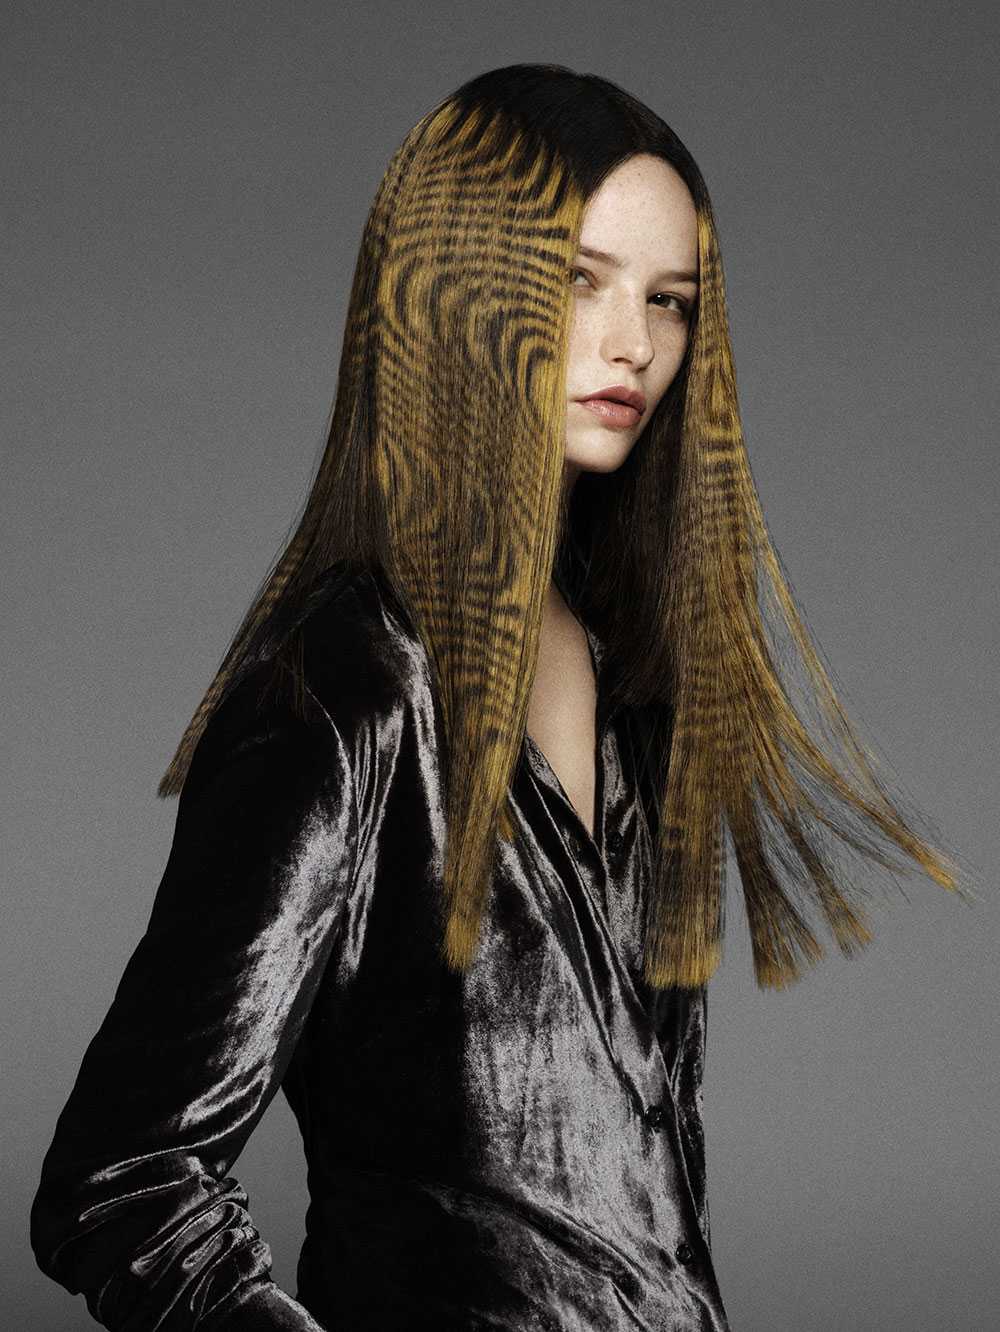 Davines Imprinting Tecnica colorazione capelli 